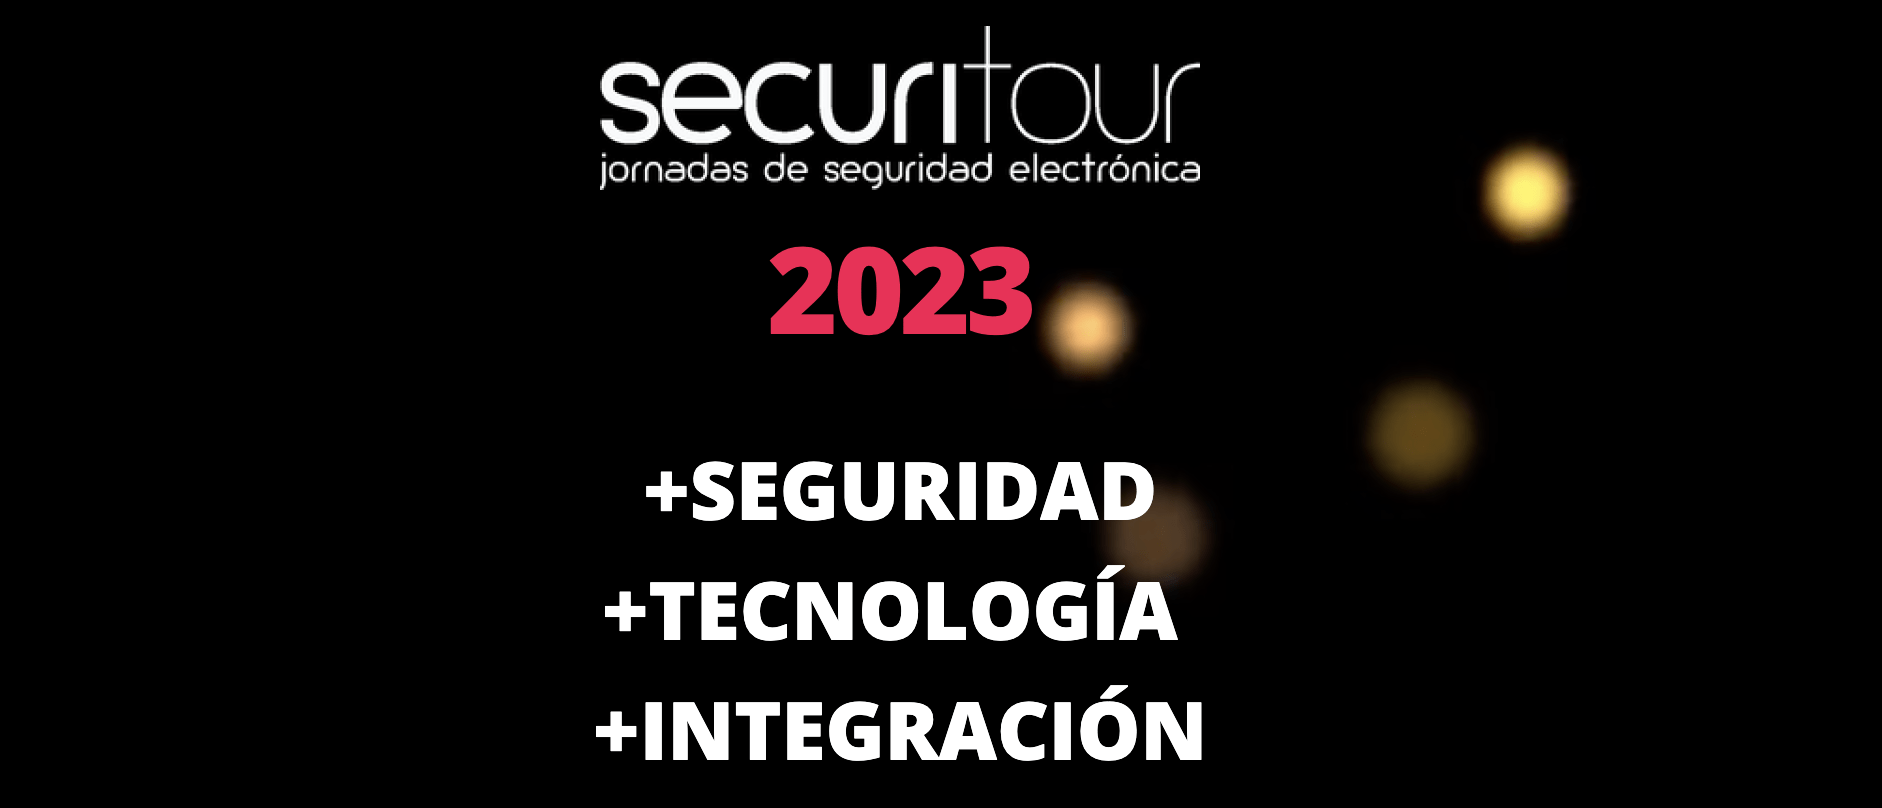 SECURITOUR ROSARIO 2023- PRESENCIAL